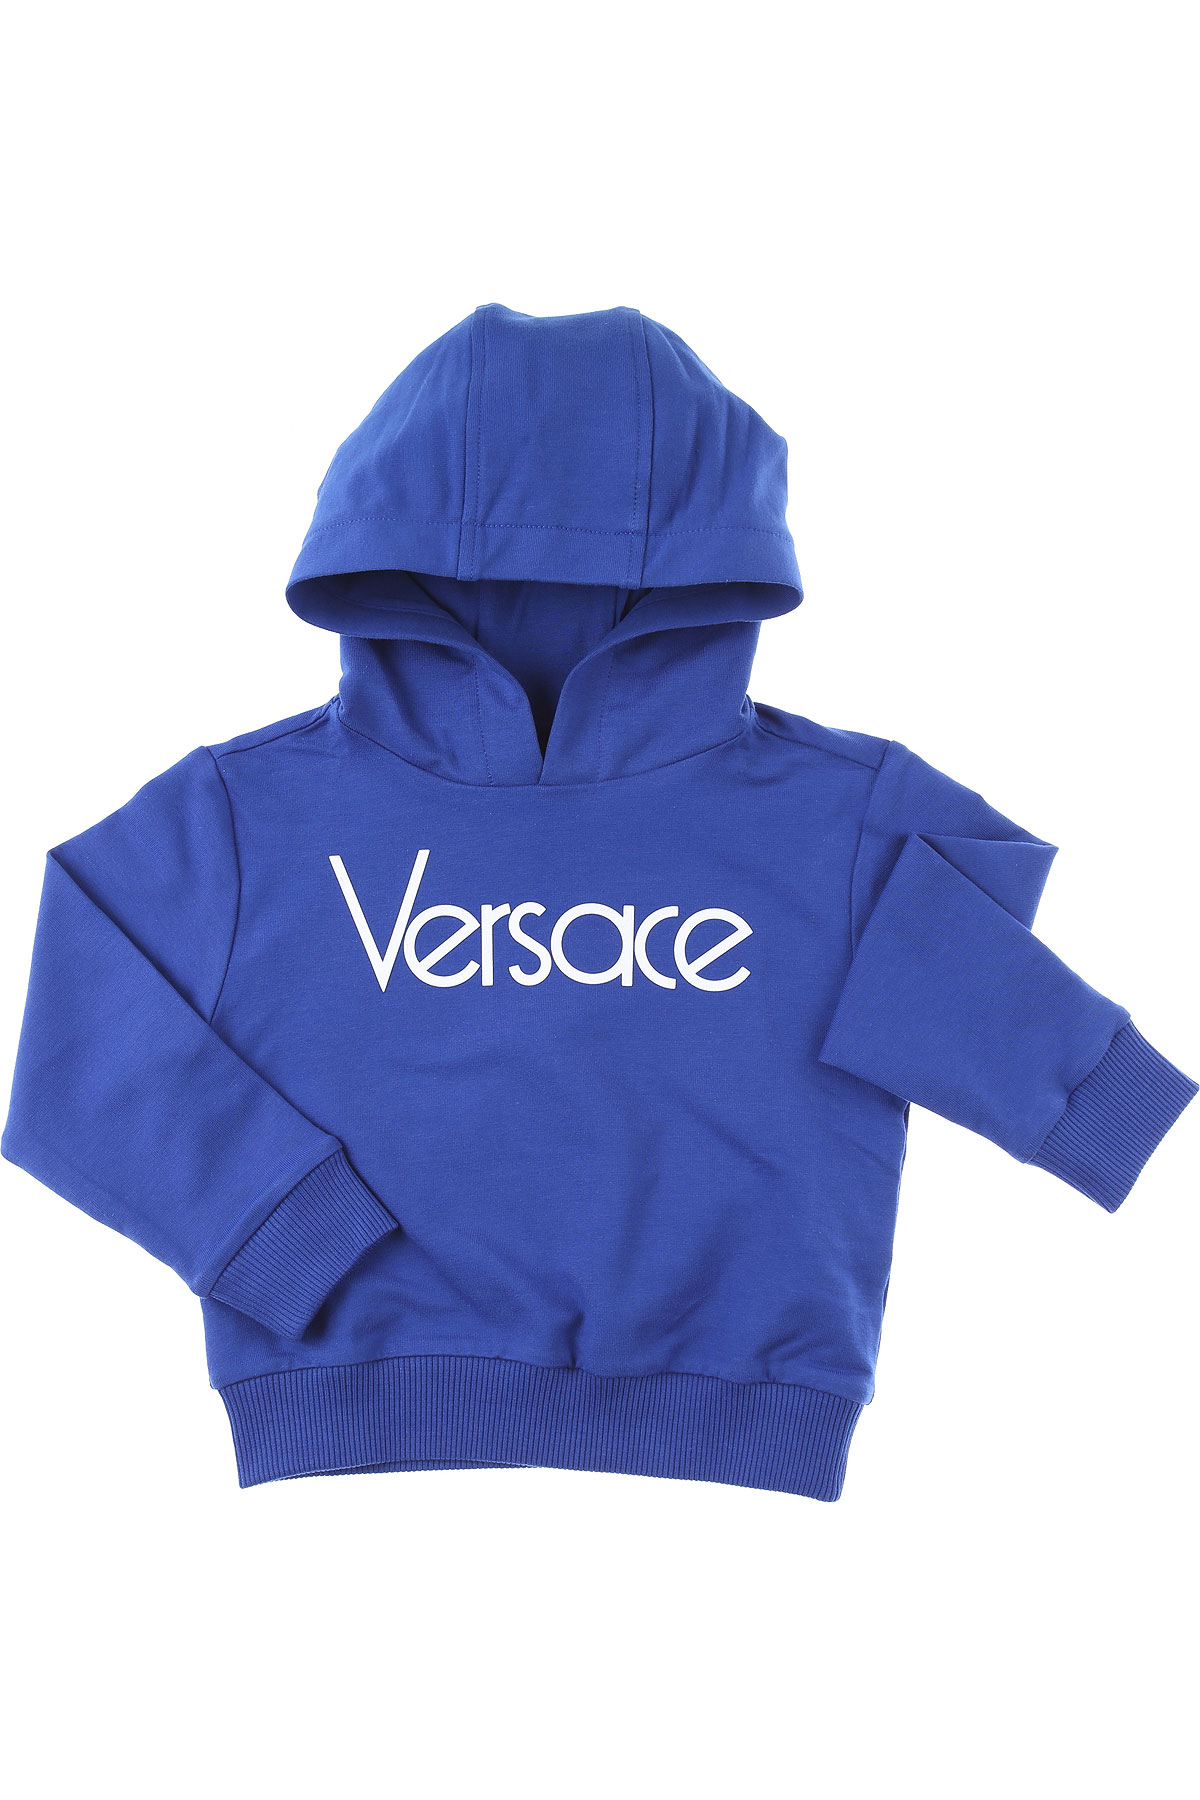 Versace Baby Sweatshirt & Kapuzenpullover für Jungen Günstig im Sale, Blau, Baumwolle, 2017, 18M 24M 2Y 3Y